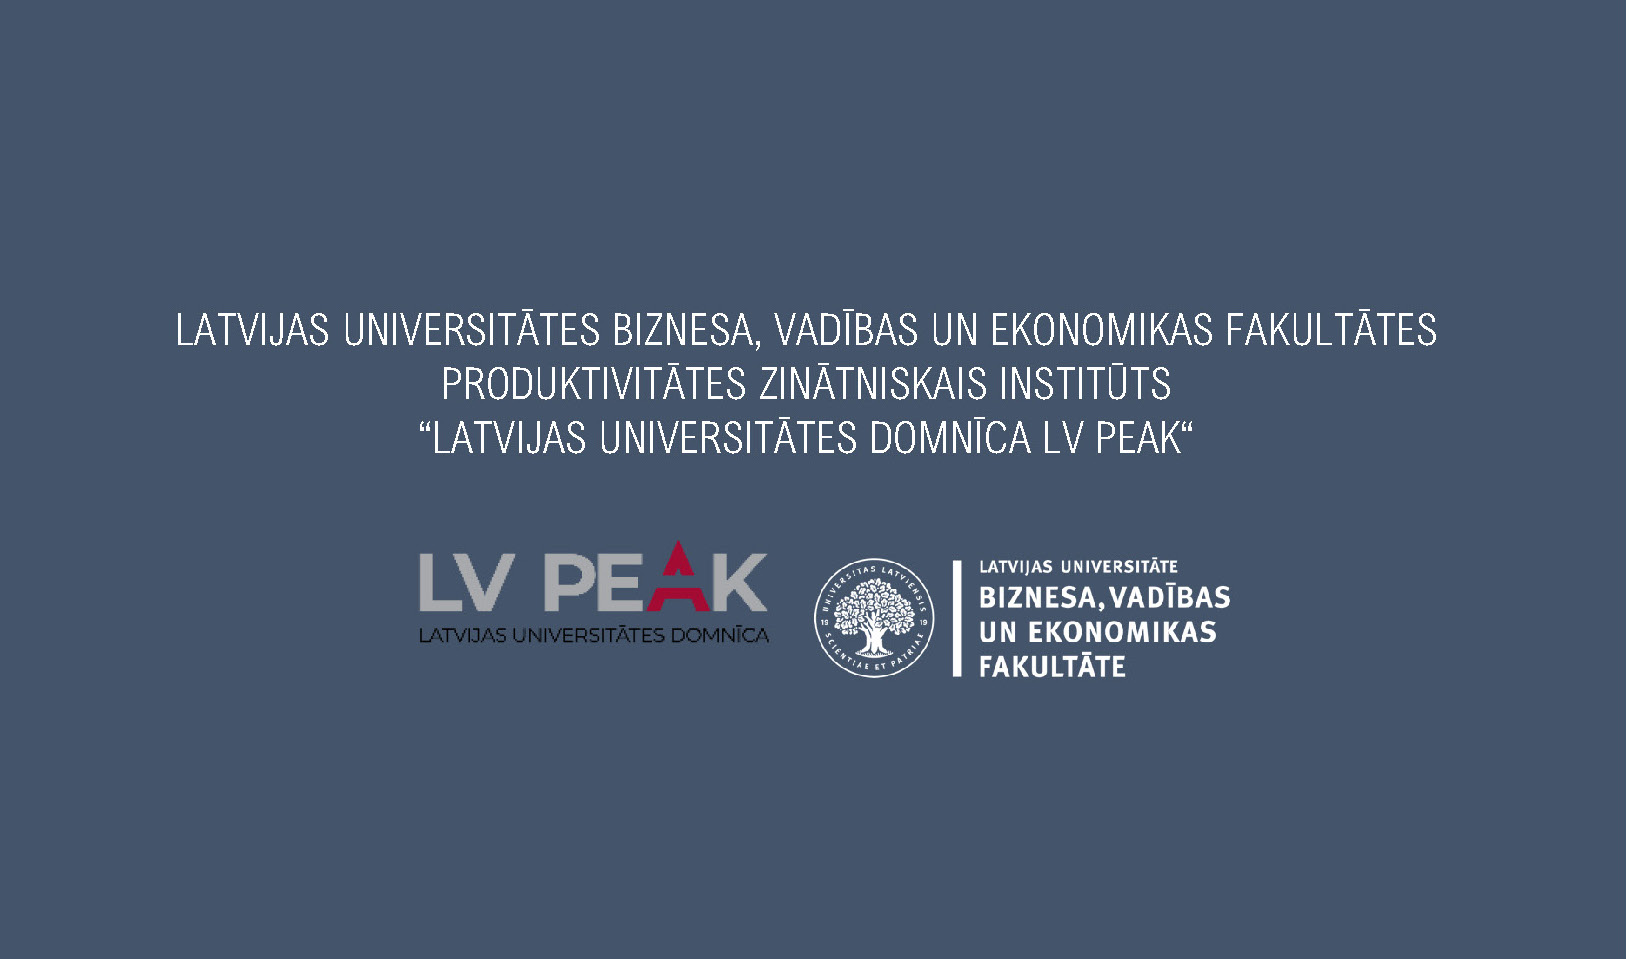 Latvijas Universitātes (LU) Produktivitātes zinātniskasi institūts “LU domnīca LV PEAK” ir sagatavojis pirmo “Ekonomikas barometru”, kas sevī ietver aktuālo Latvijas makroekonomikas datu analīzi un praktiskas rekomendācijas politikas veidotājiem